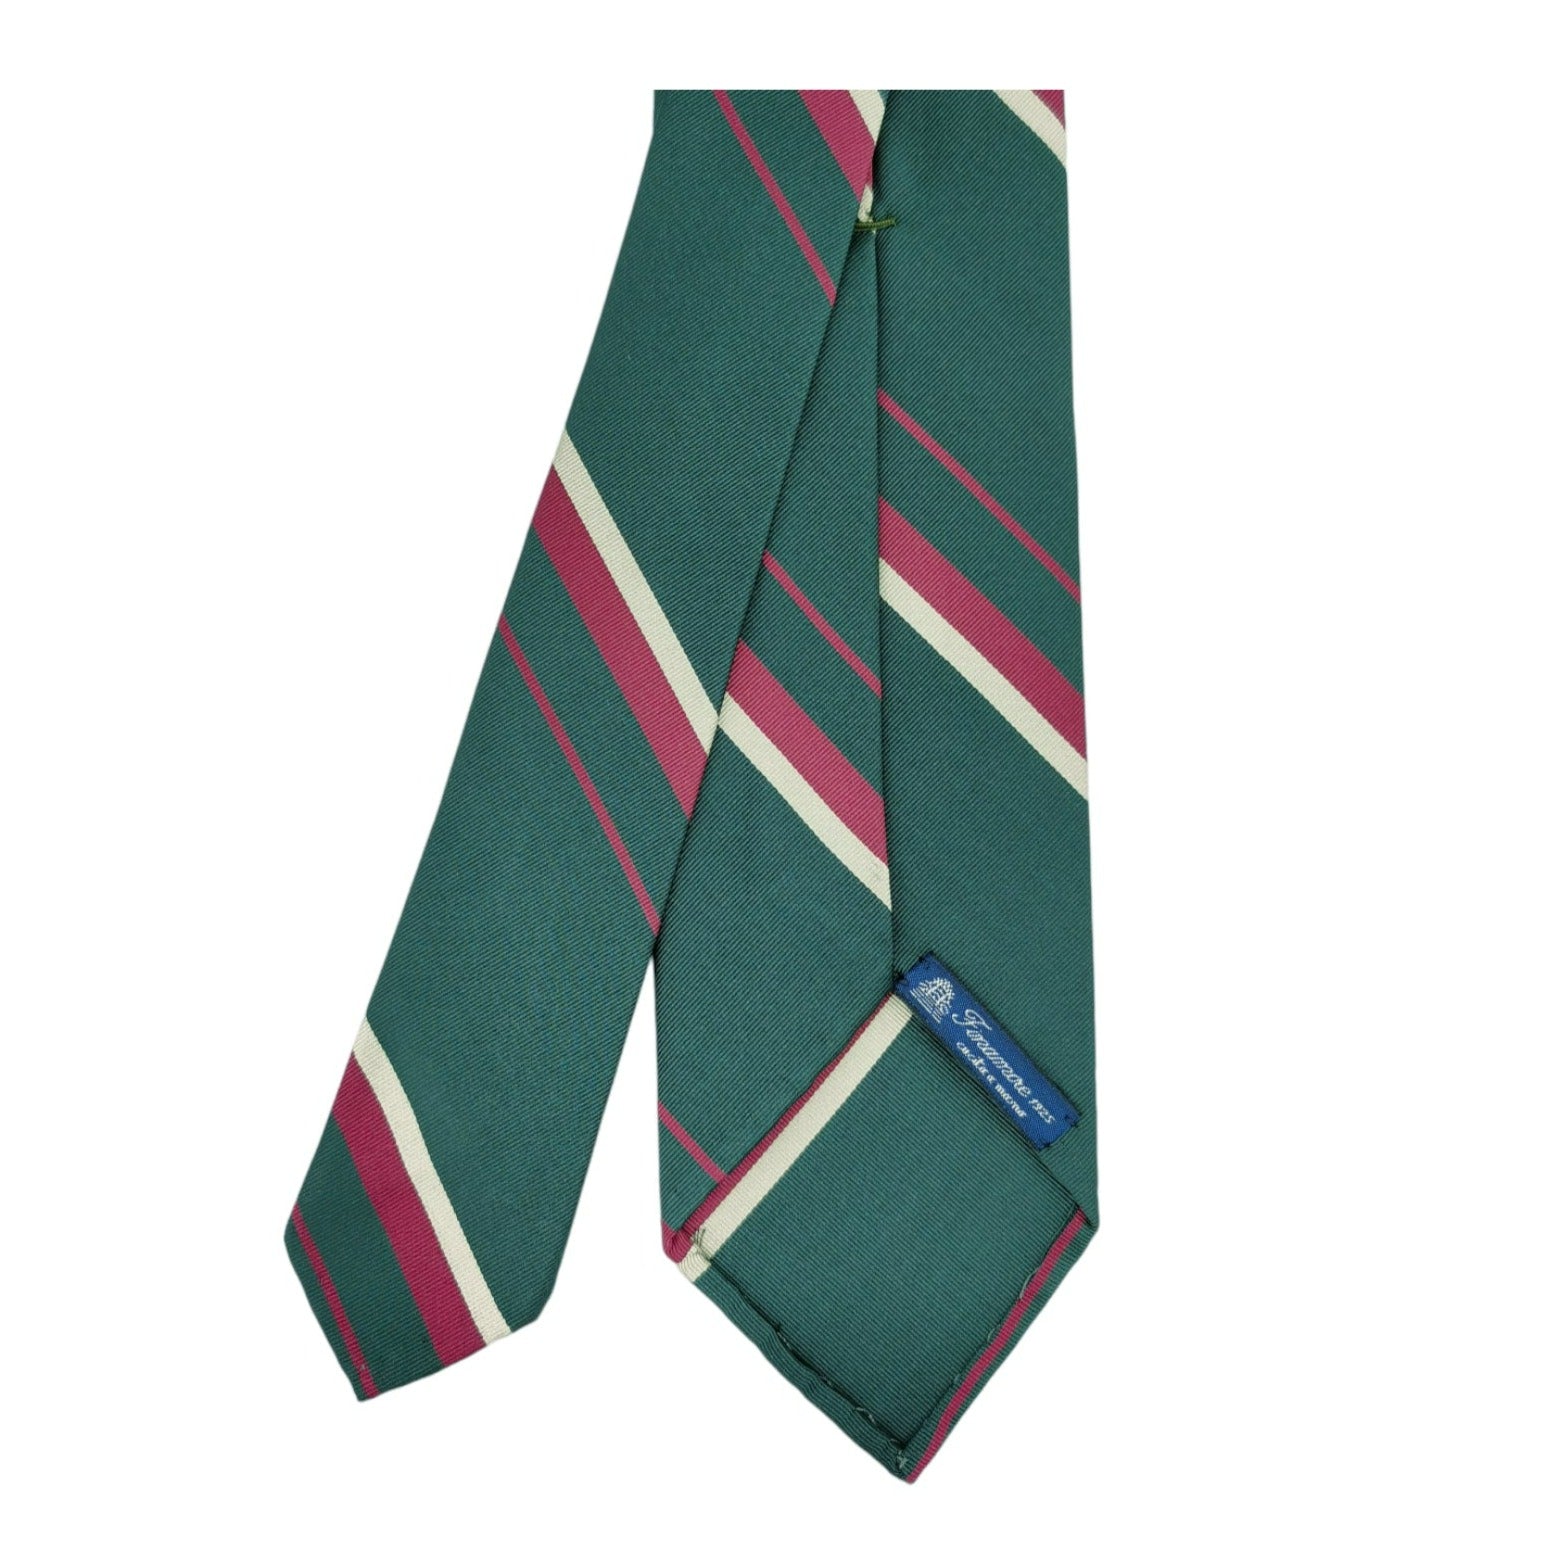 Anversa tie green background white and dark red stripes